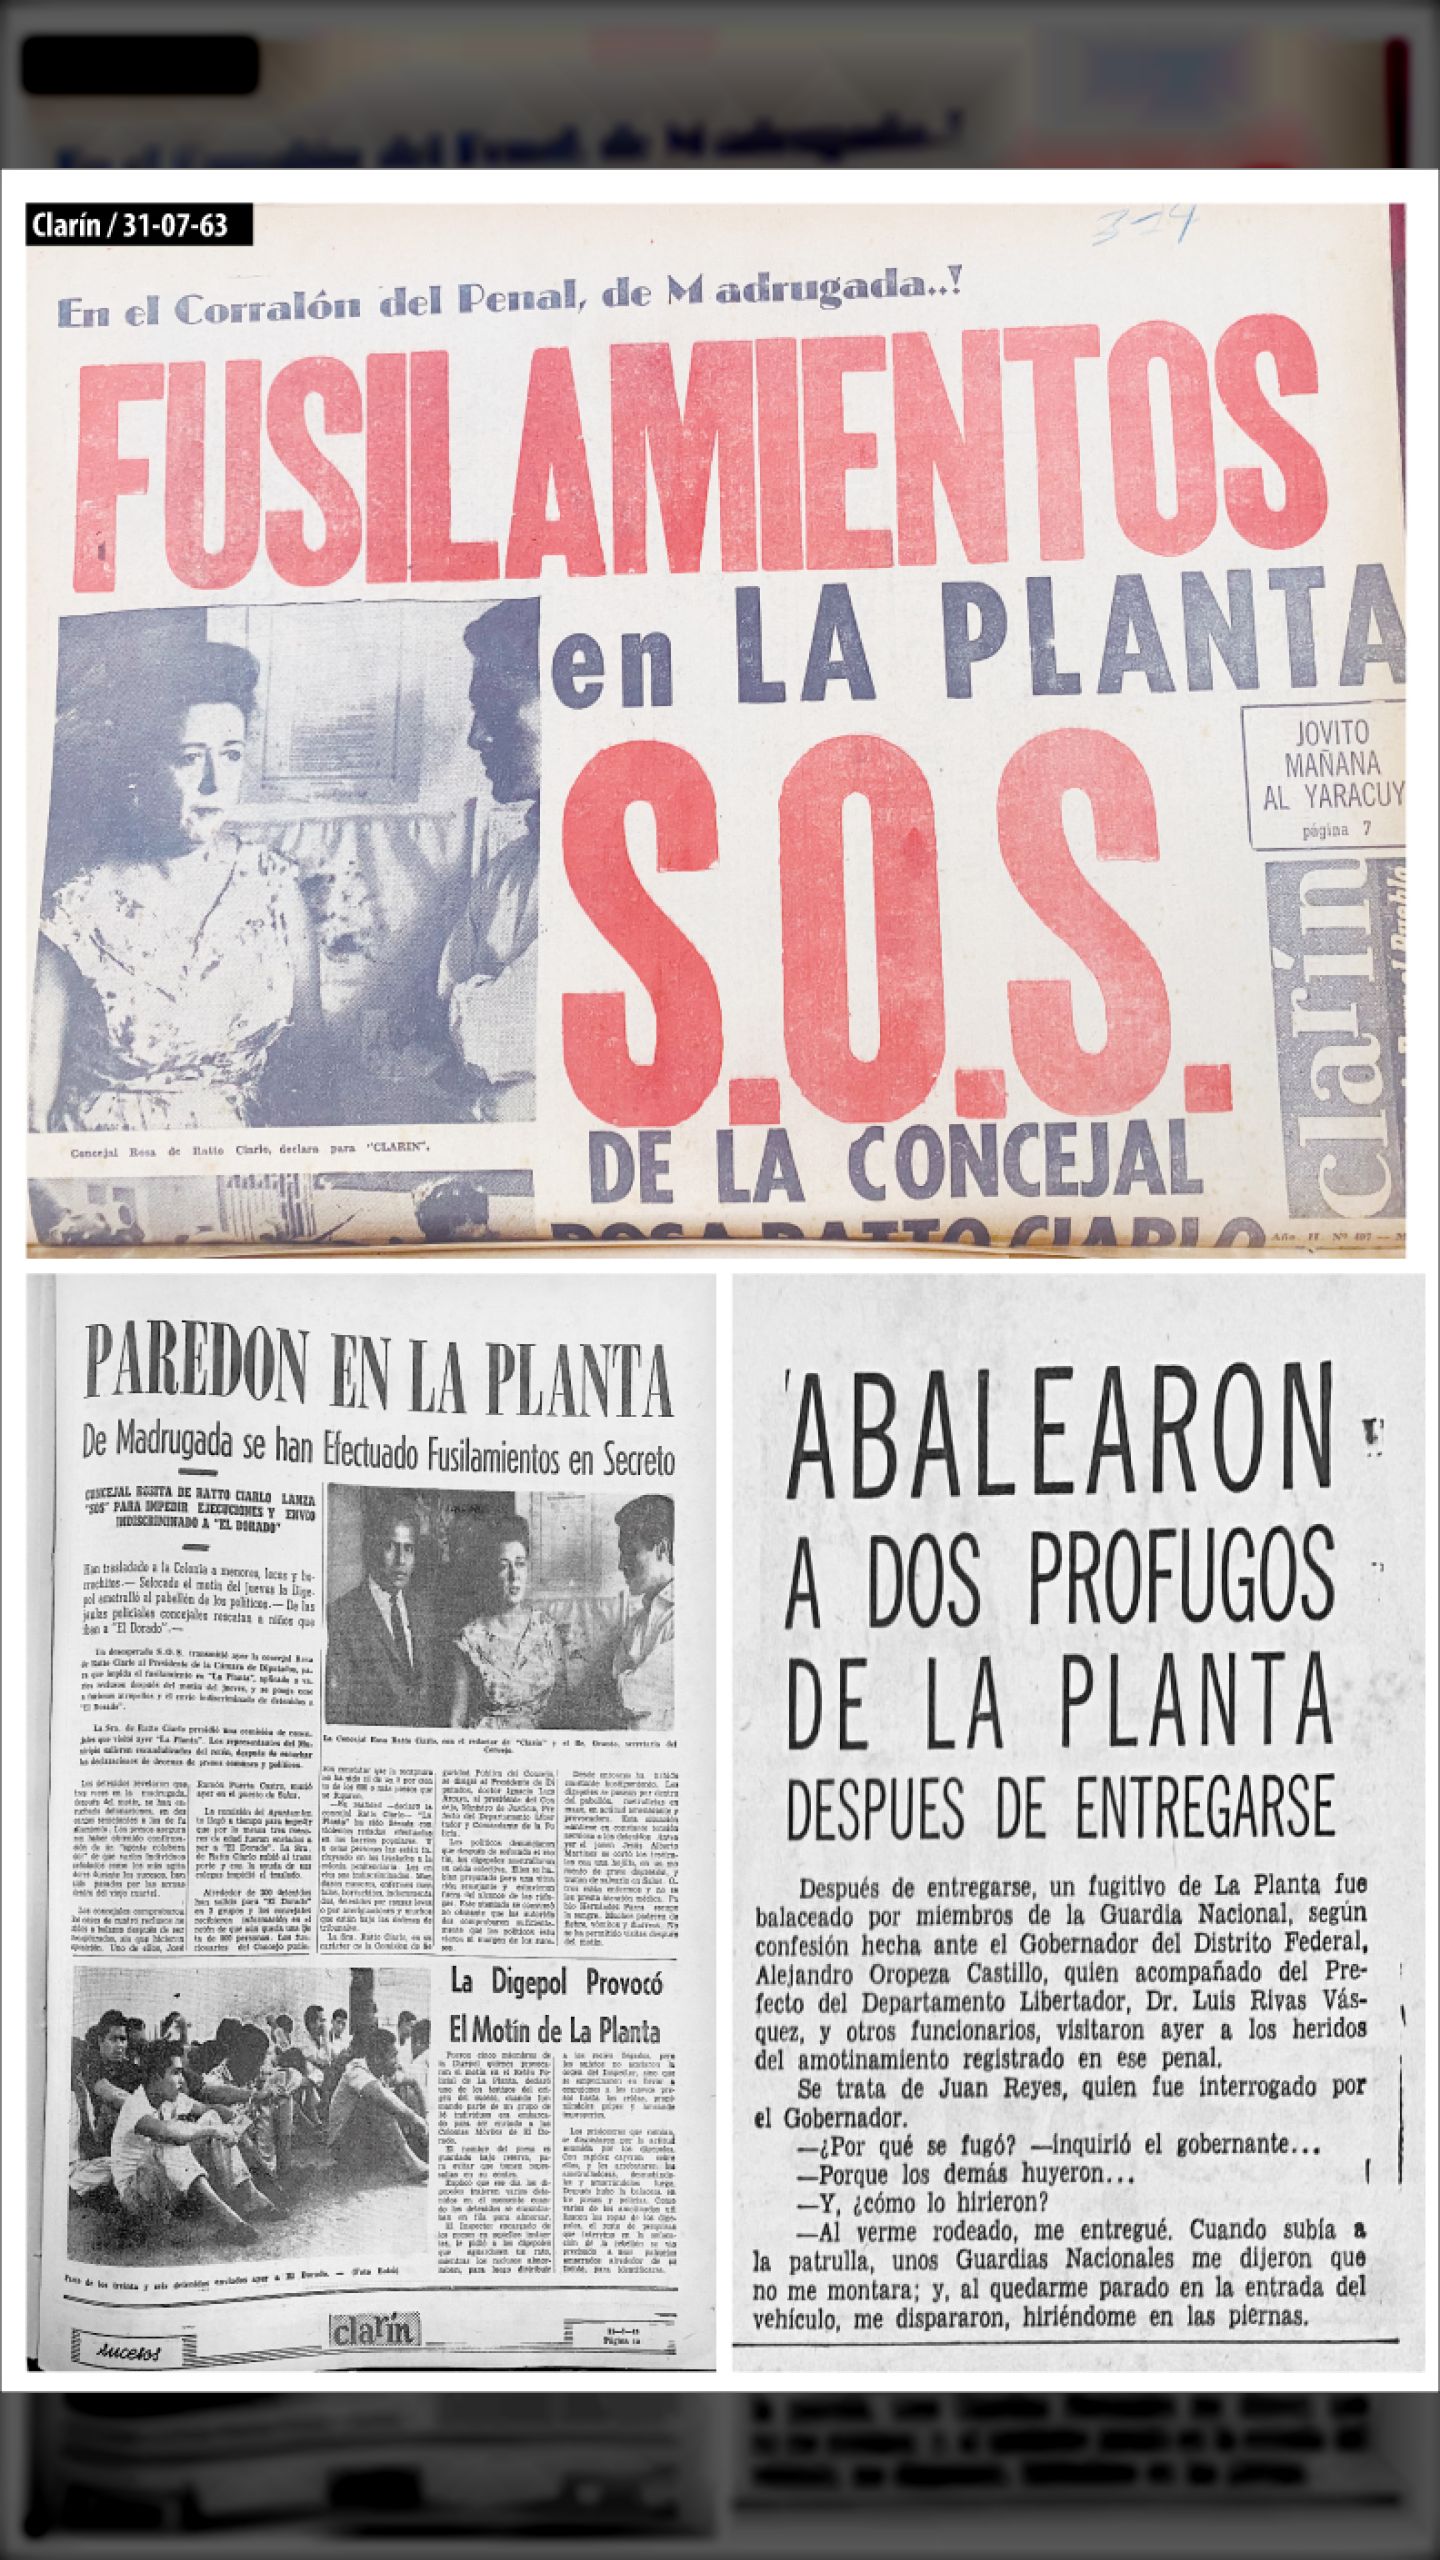 FUSILAMIENTOS EN  “LA PLANTA” (CLARÍN, 31 de agosto 1963)